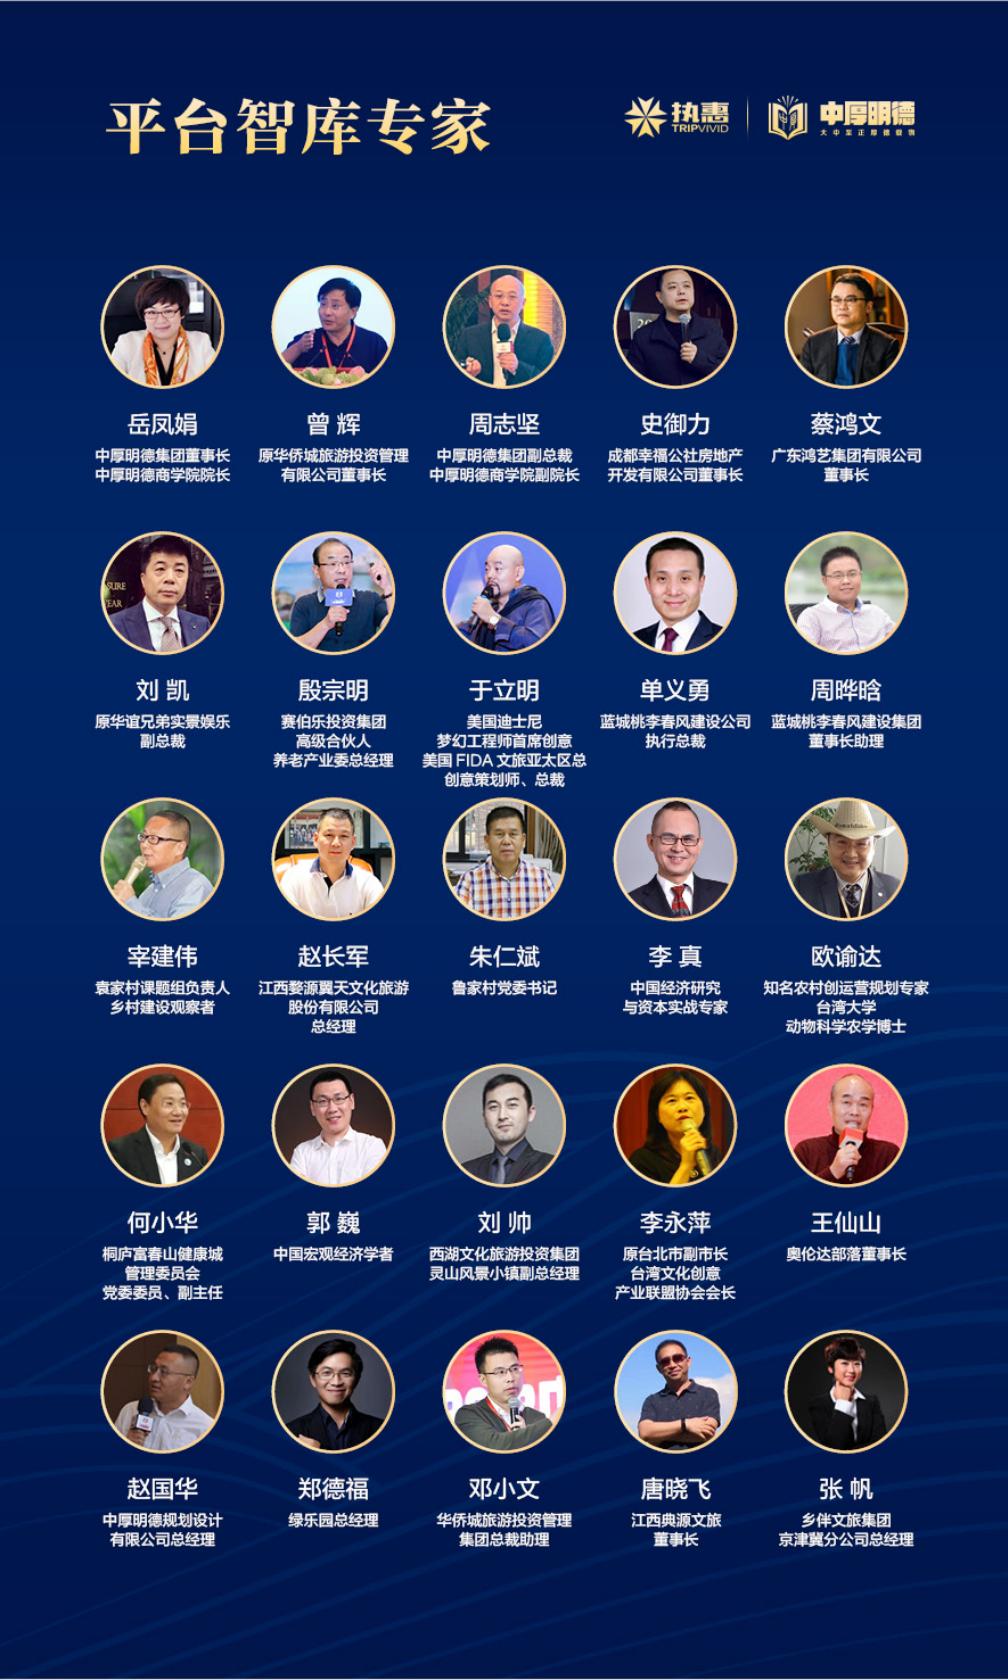 第五届中国文旅大消费年度峰会